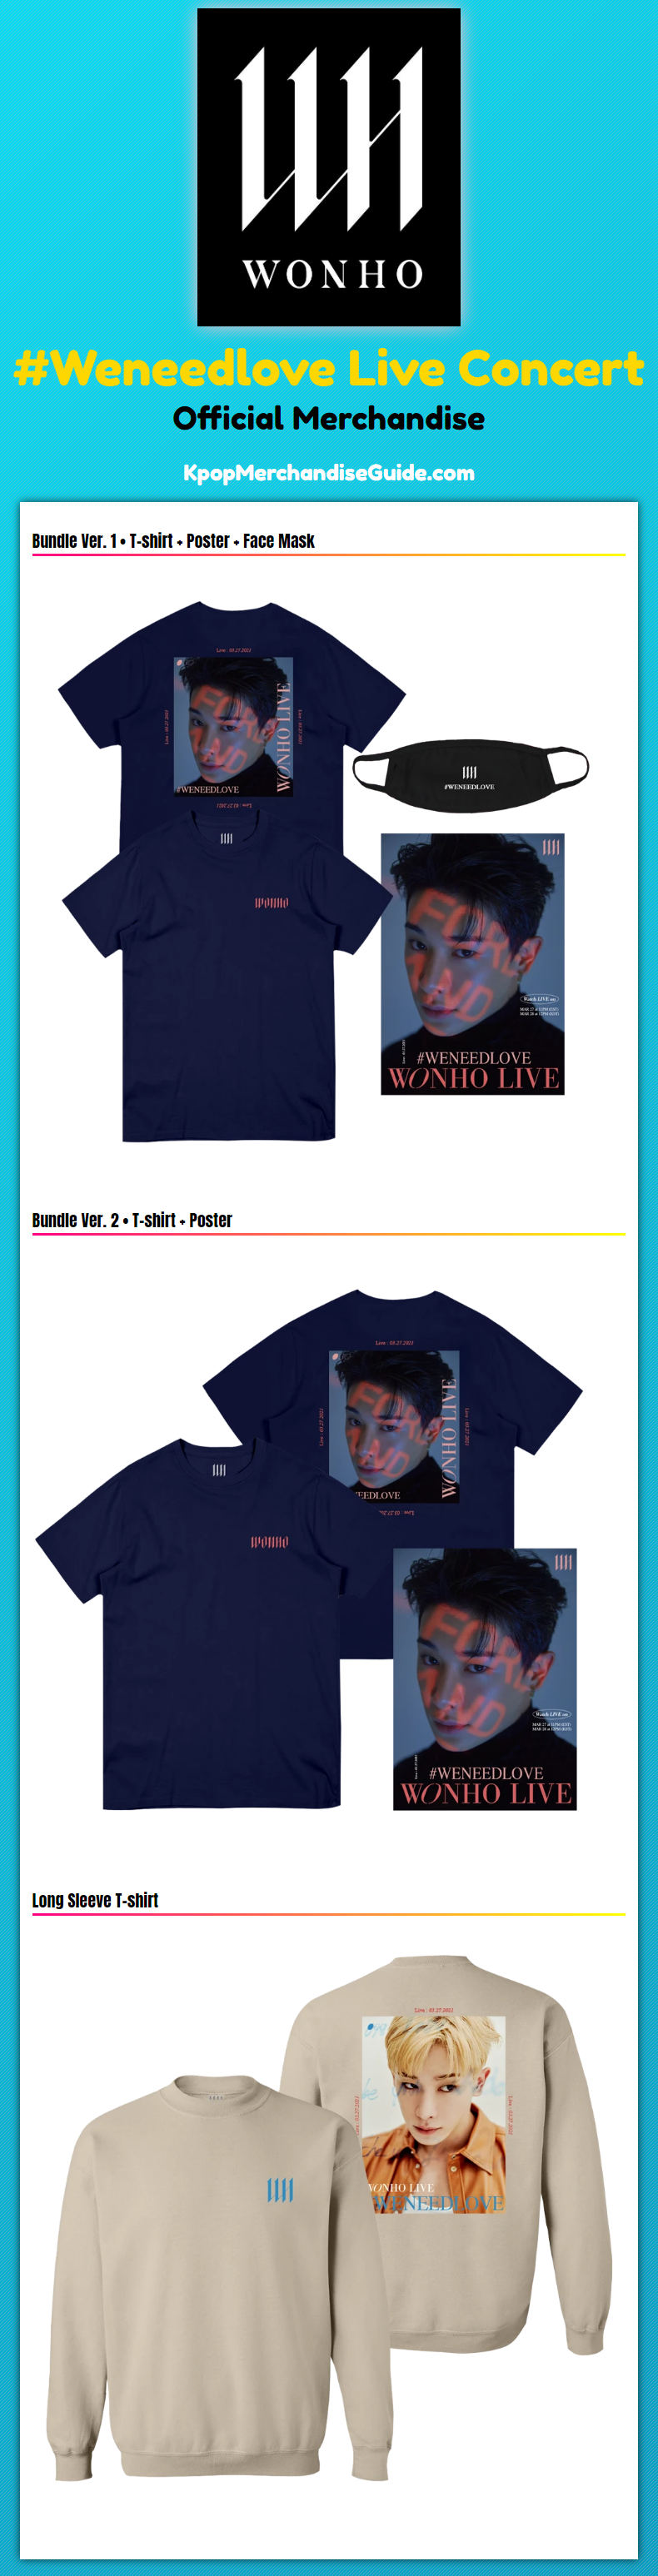 Wonho #Weneedlove Live Concert Merchandise